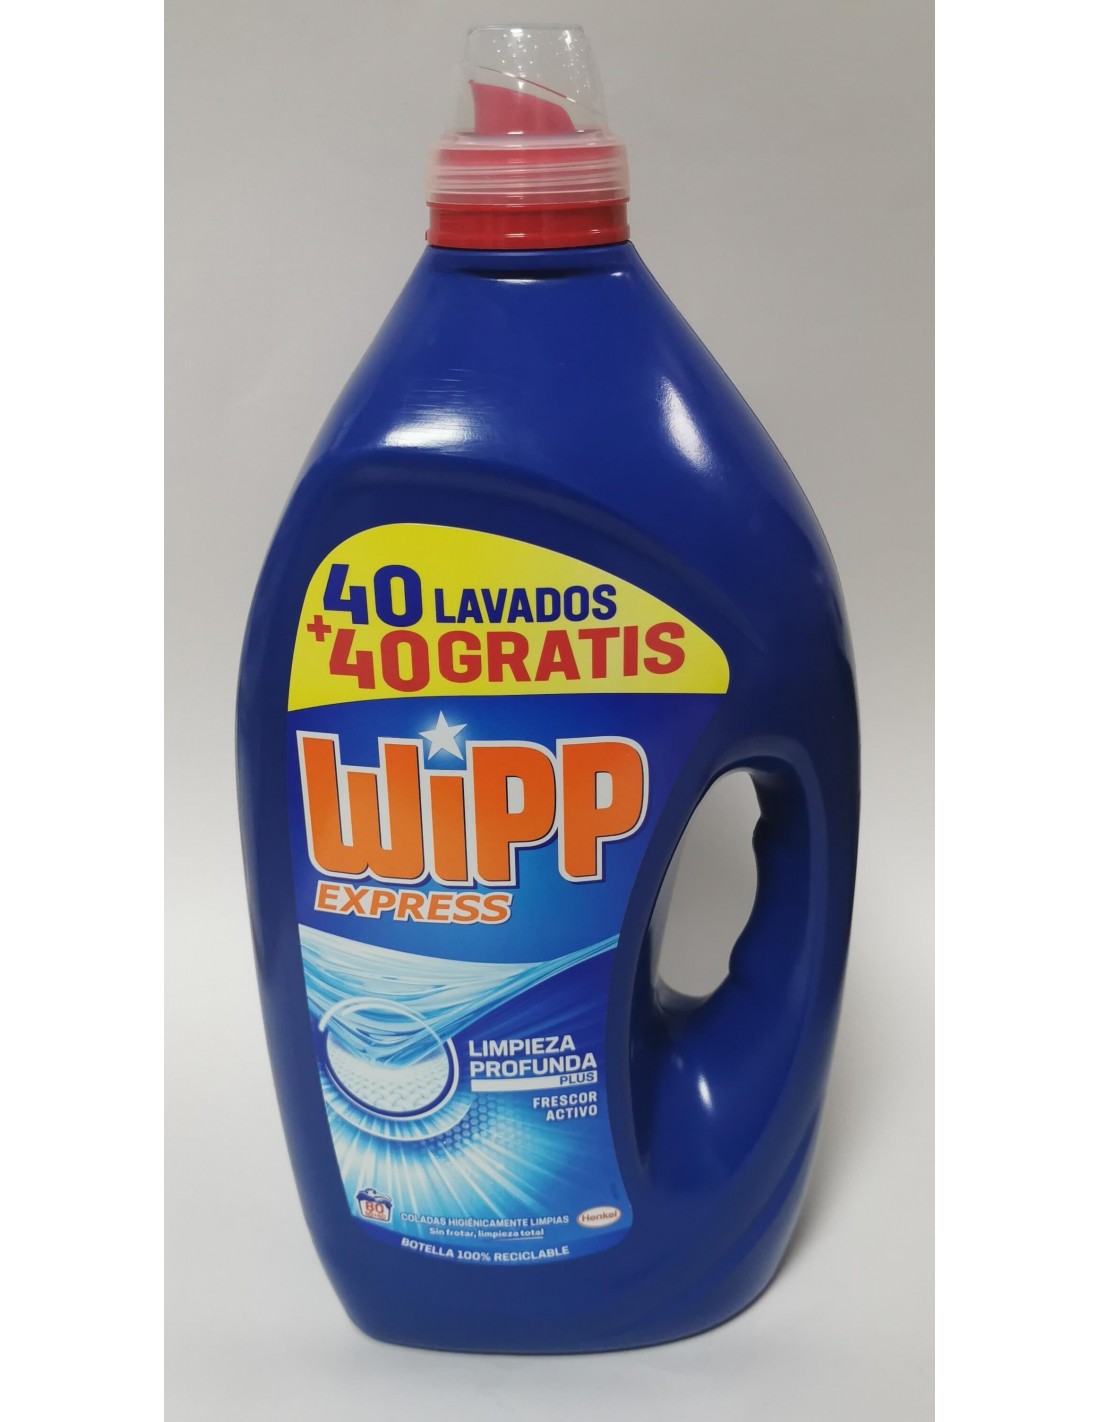 Wipp express limpieza profunda frescor activo 40 lavados + 40 gratis